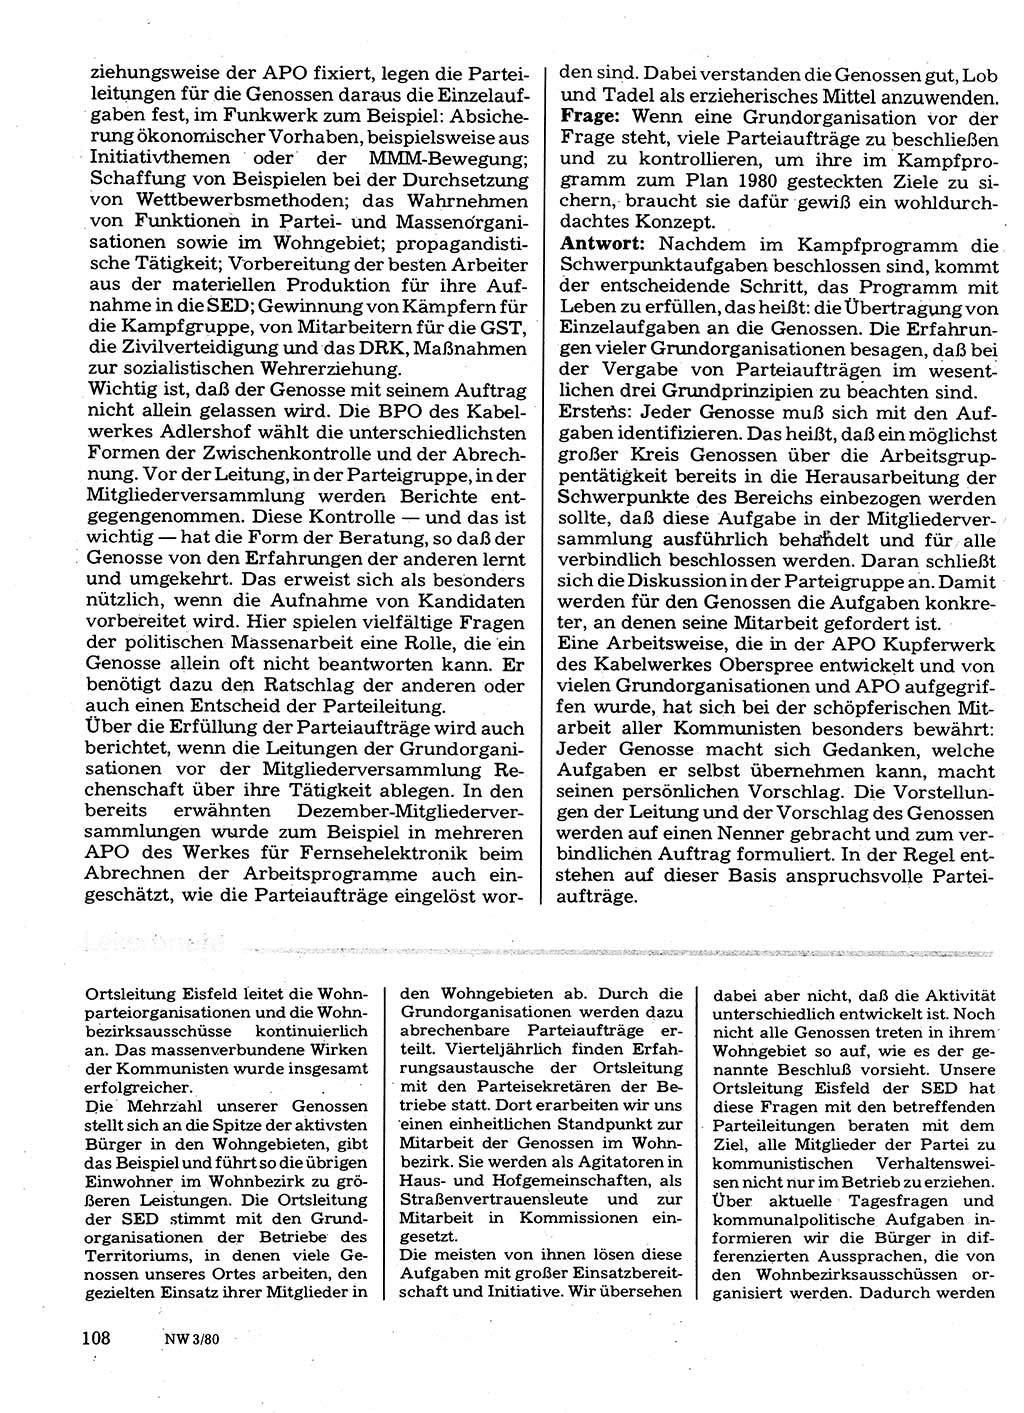 Neuer Weg (NW), Organ des Zentralkomitees (ZK) der SED (Sozialistische Einheitspartei Deutschlands) für Fragen des Parteilebens, 35. Jahrgang [Deutsche Demokratische Republik (DDR)] 1980, Seite 108 (NW ZK SED DDR 1980, S. 108)